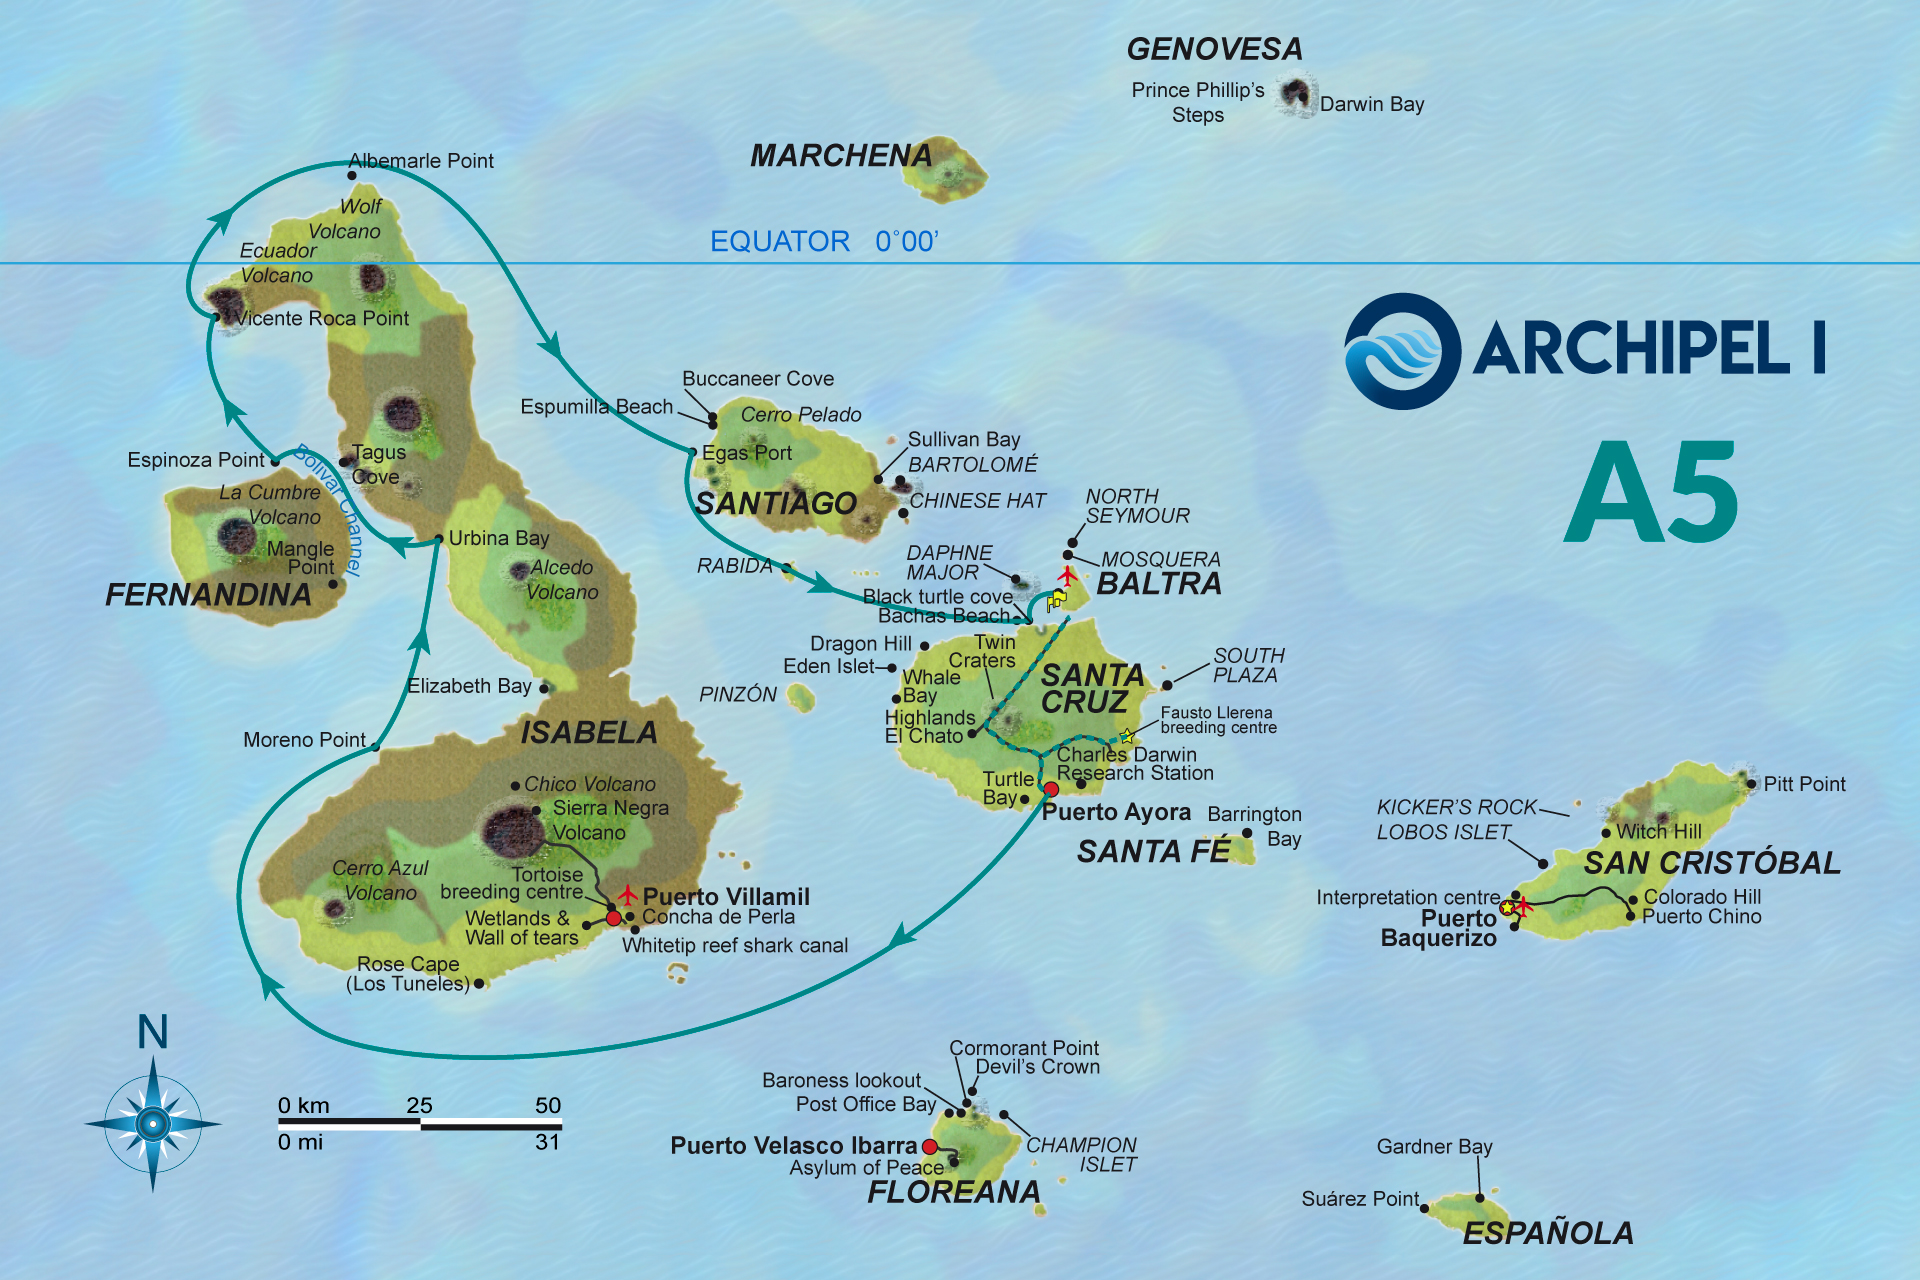 Galapagos-archipel1-crucero-naturalista